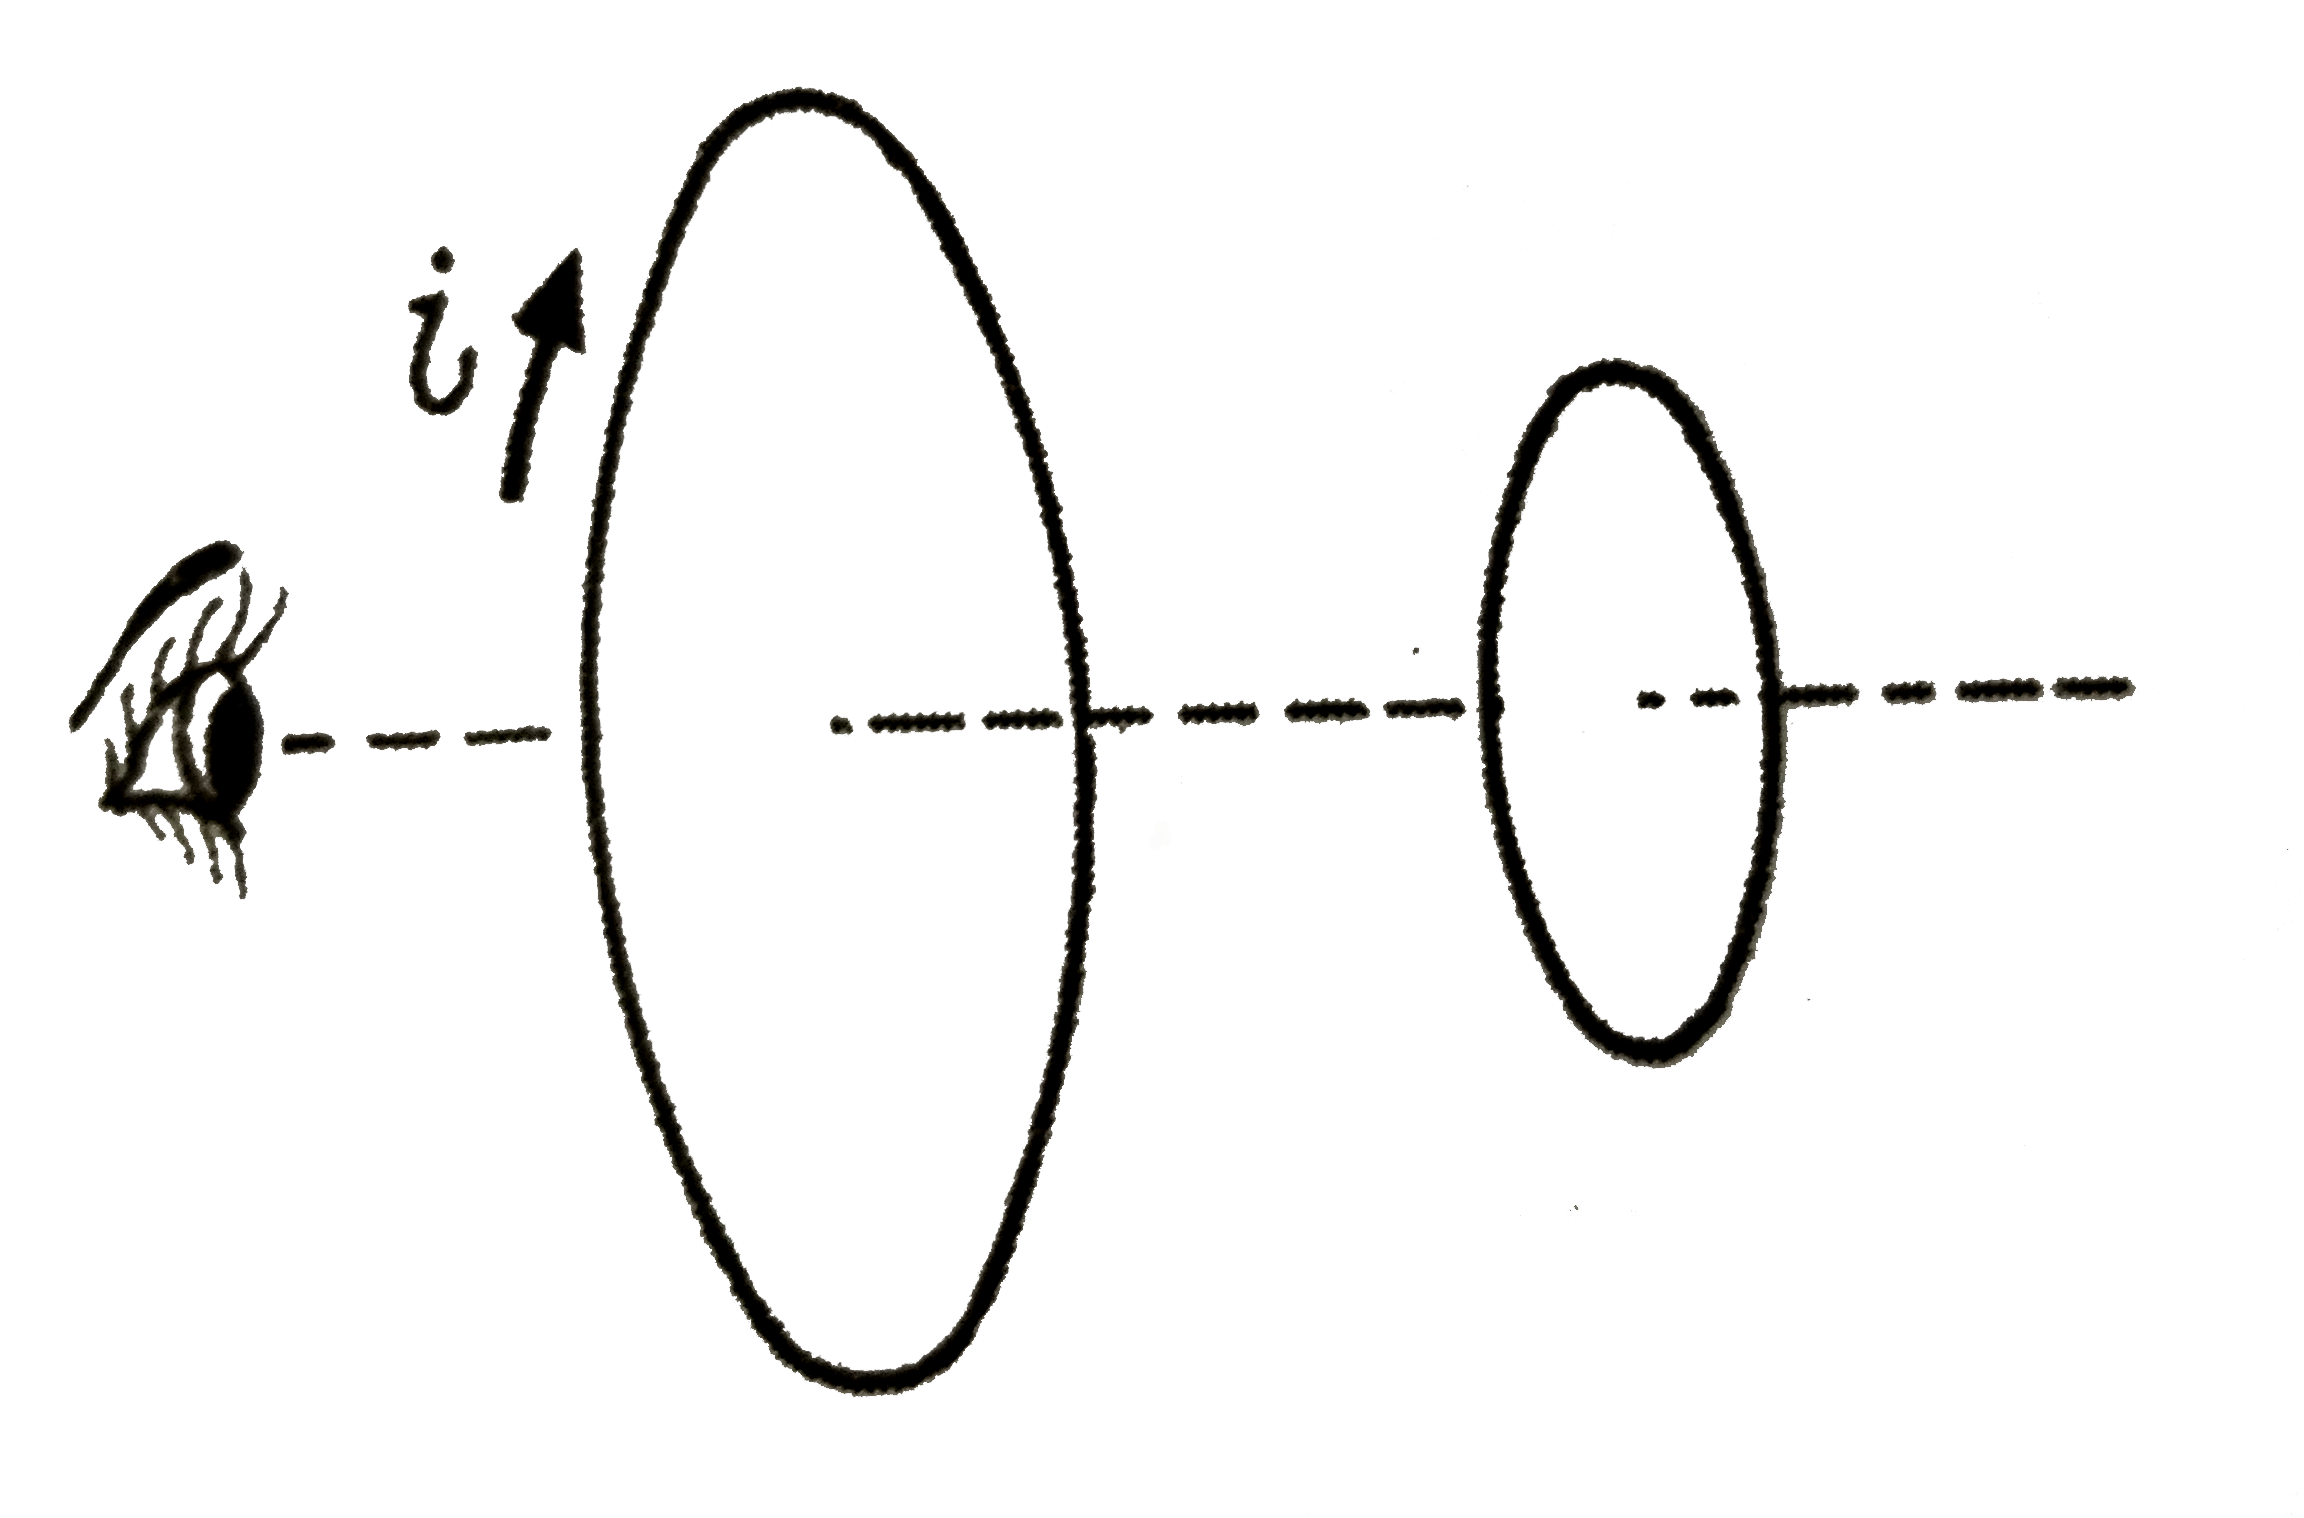 दो चालक - लूपों के तल परस्पर आमने-सामने एक - दूसरे से कुछ दुरी पर है । एक प्रक्षेक उनकी उभयनिष्ठ अक्ष (common axis)  के अनुदिश देखता है :   (i)  यदि बड़े लूप में अचानक दक्षिणावर्त (clockwise) धारा i स्थापित की जाये, तो छोटे लूप में प्रेरित धारा की दिशा क्या होगी  ?   (ii) यदि बड़े लूप की धारा की अचानक बन्द कर दिया जाये तब ?